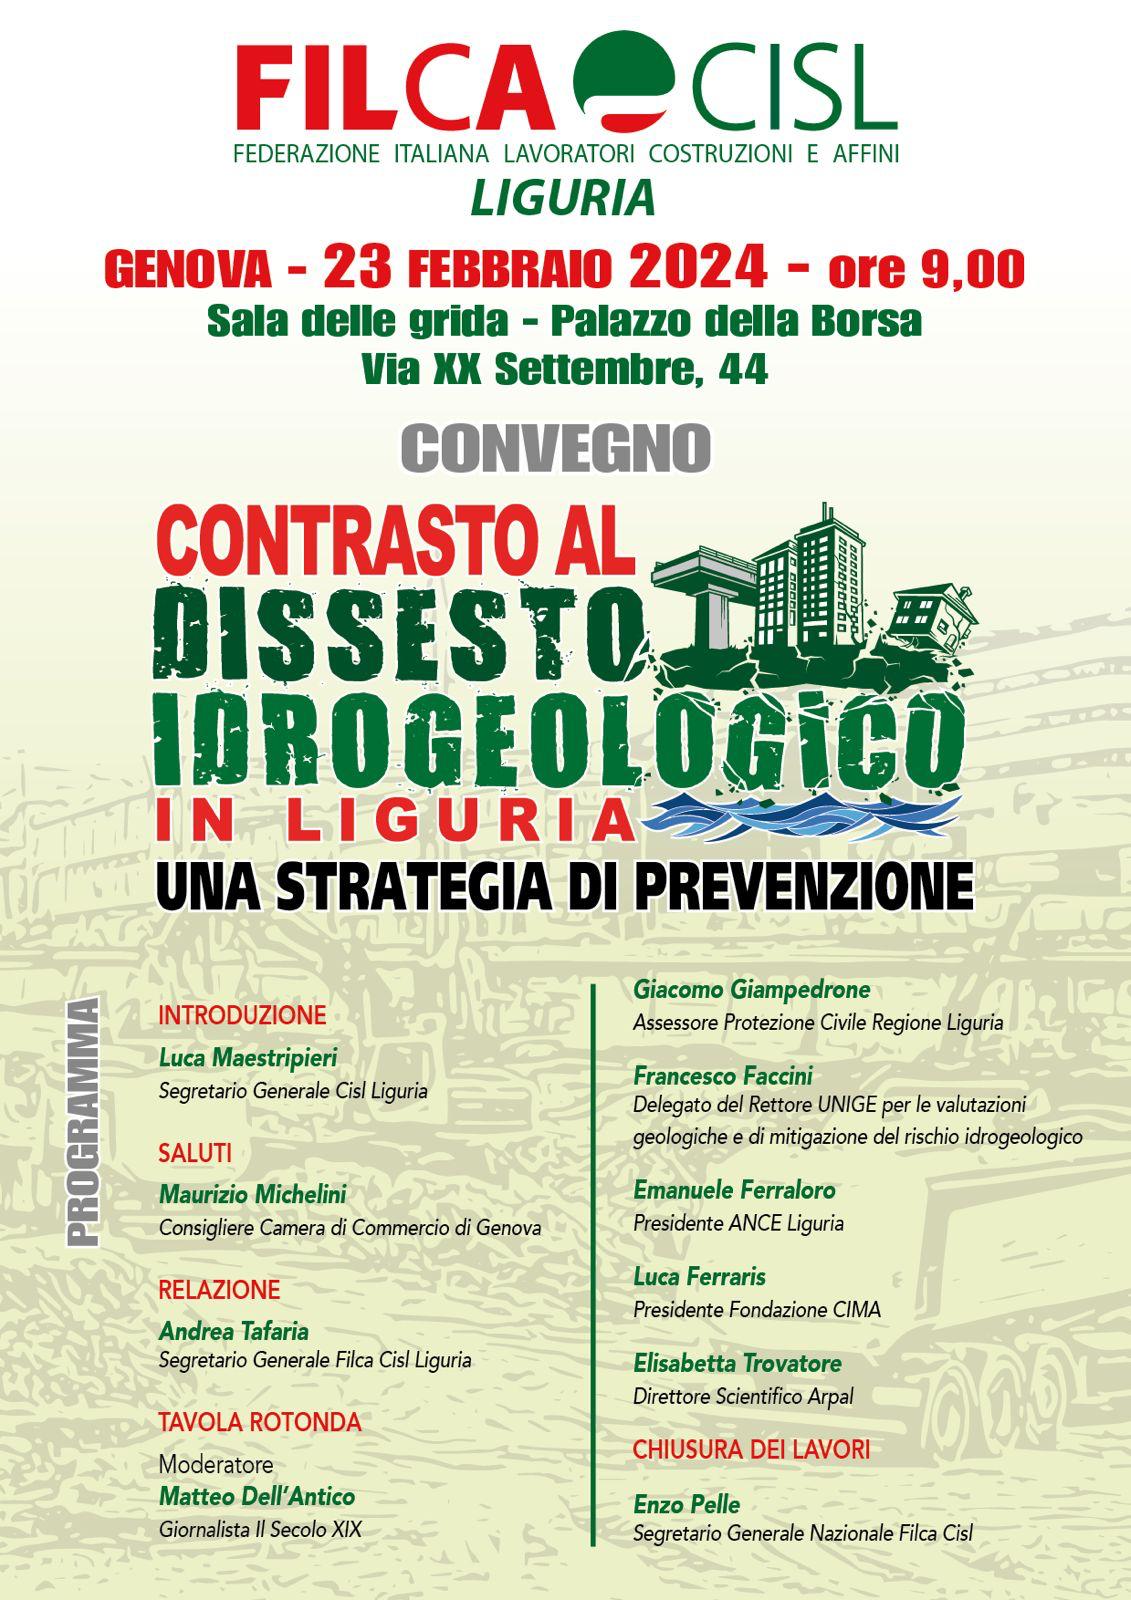 Contrasto al dissesto idrogeologico in Liguria, una strategia di prevenzione di Filca Cisl Liguria